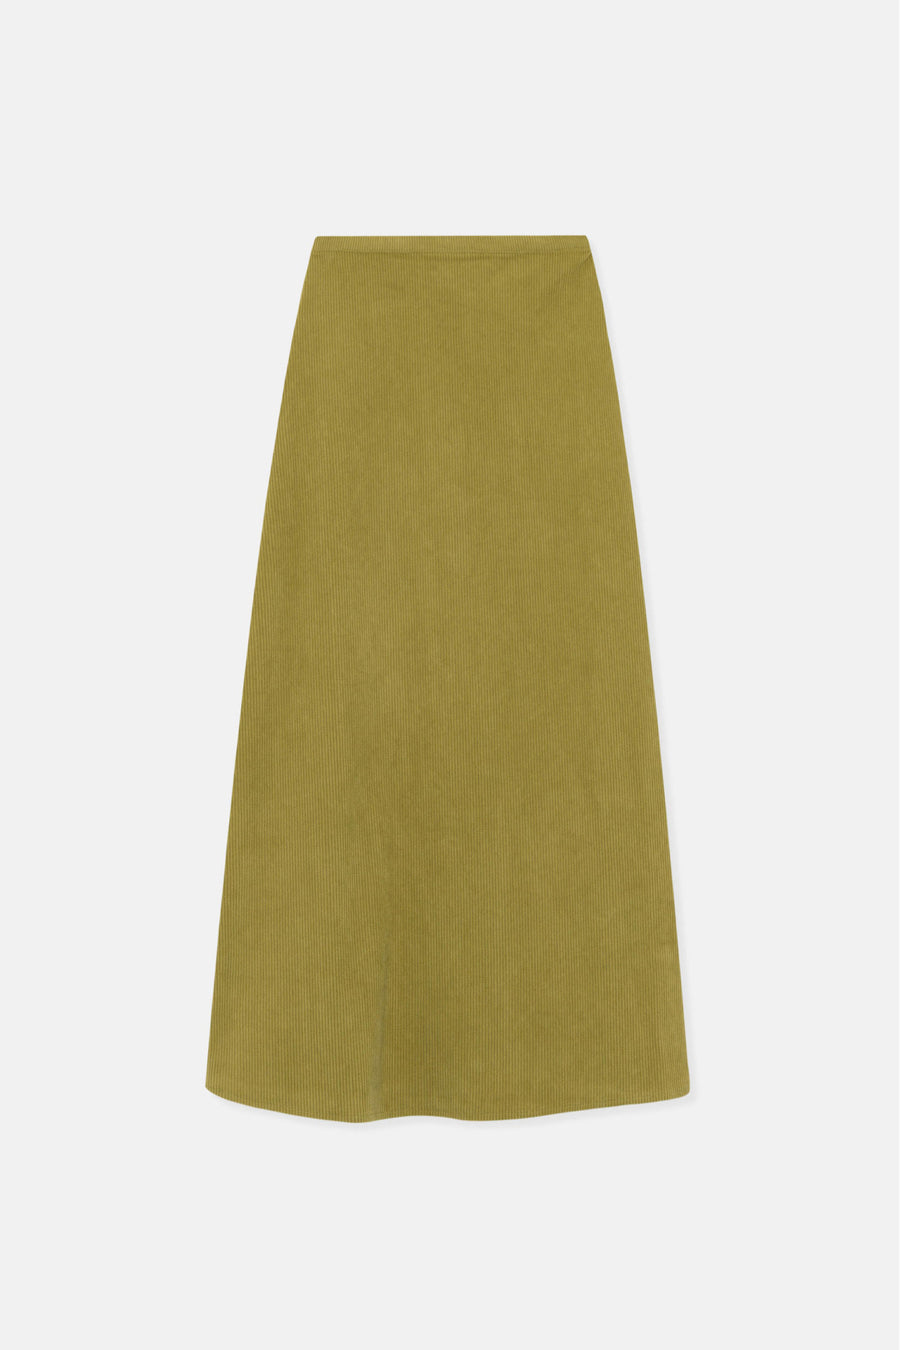 Green High-Waisted Corduroy Midi Skirt